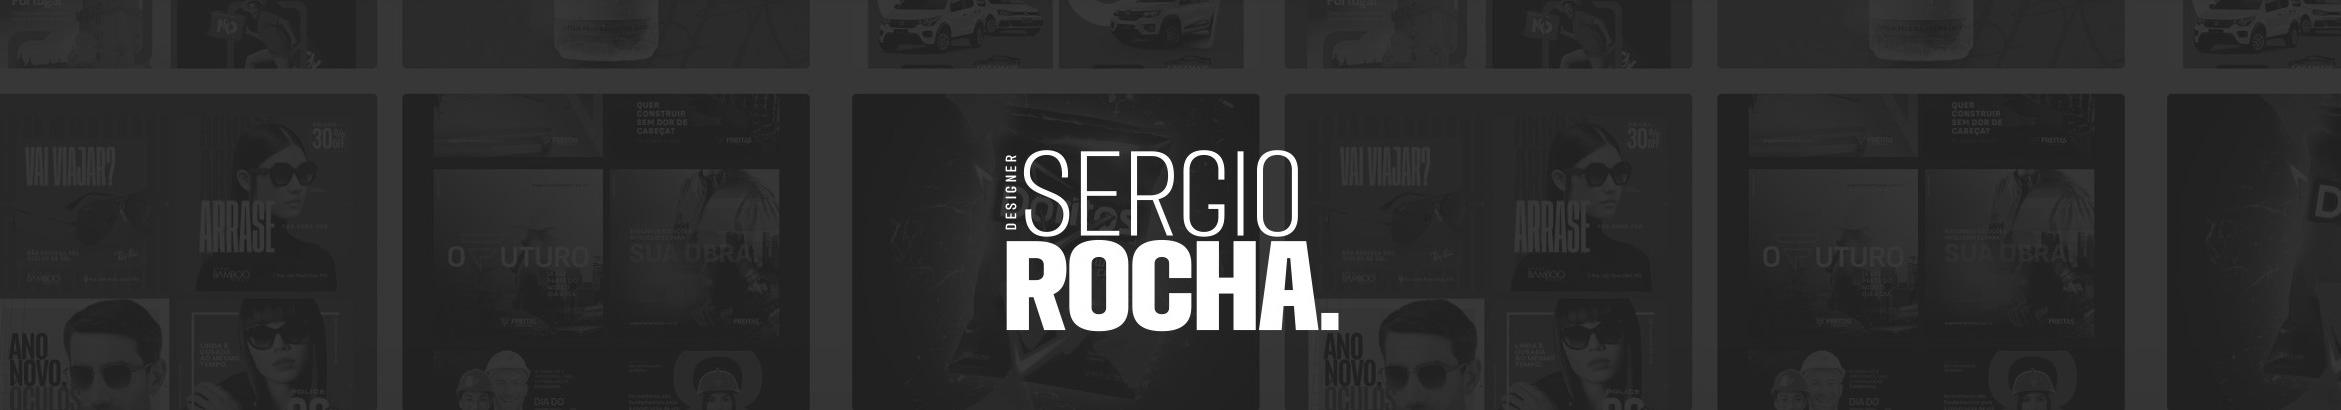 Sergio Rocha's profile banner